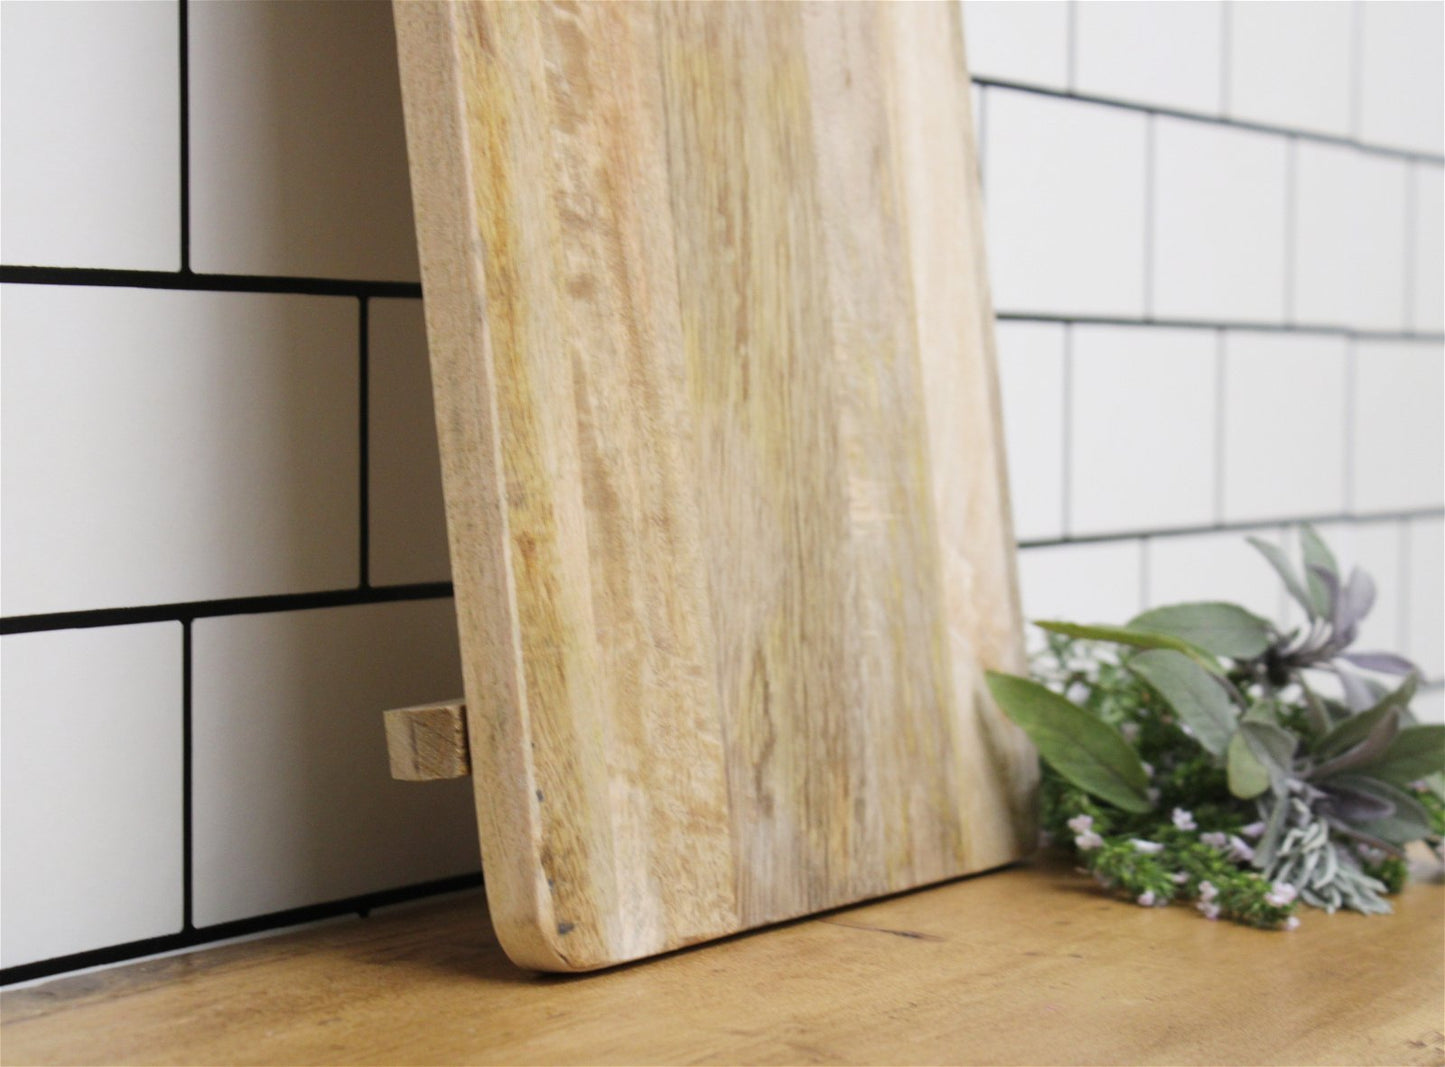 Mango Wood Chopping Board - a Cheeky Plant